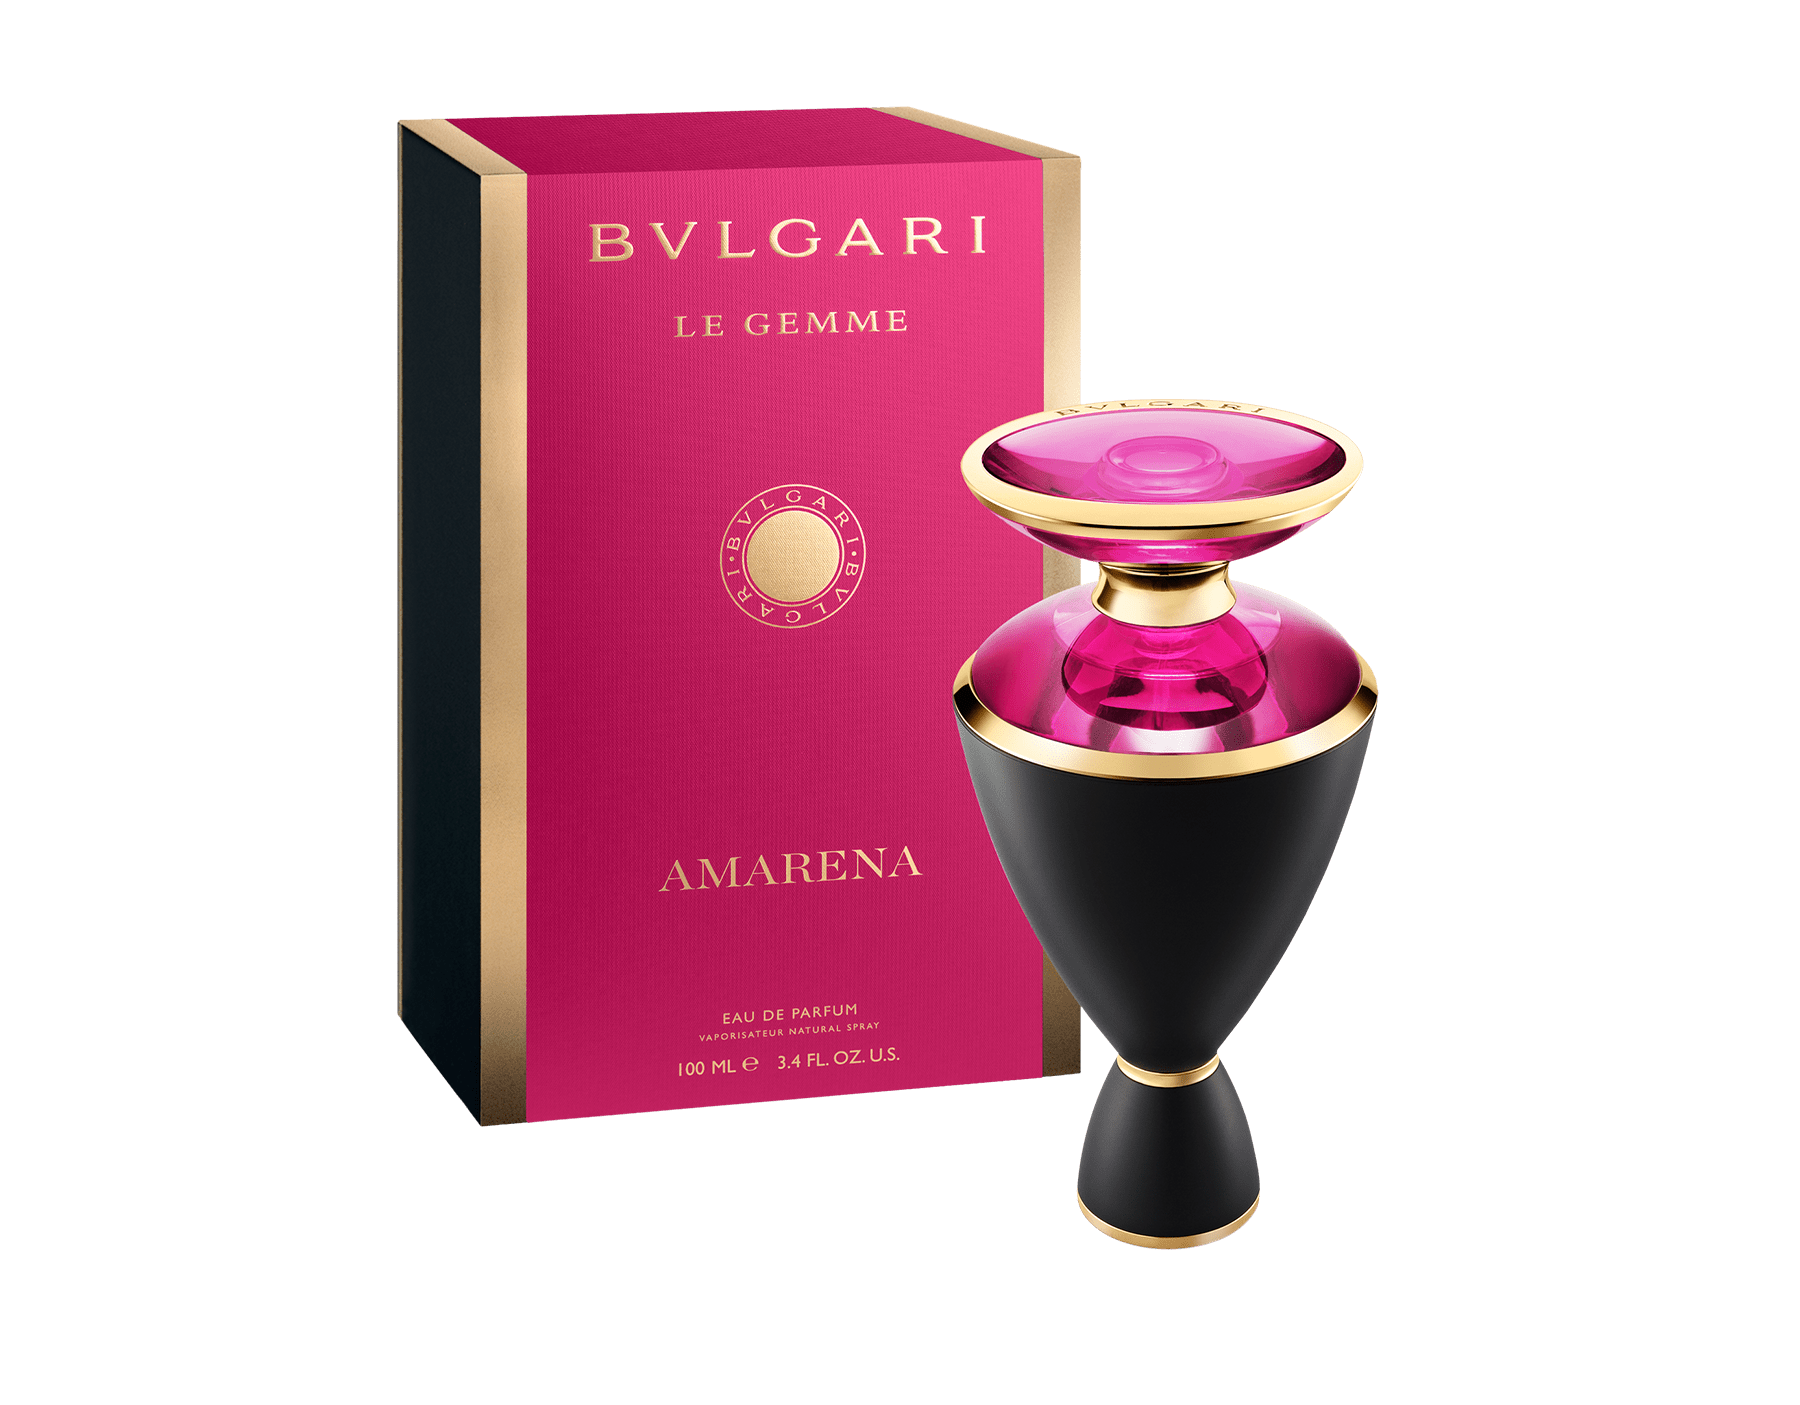 Bvlgari Le Gemme Amarena For Women Eau De Parfum 100ML